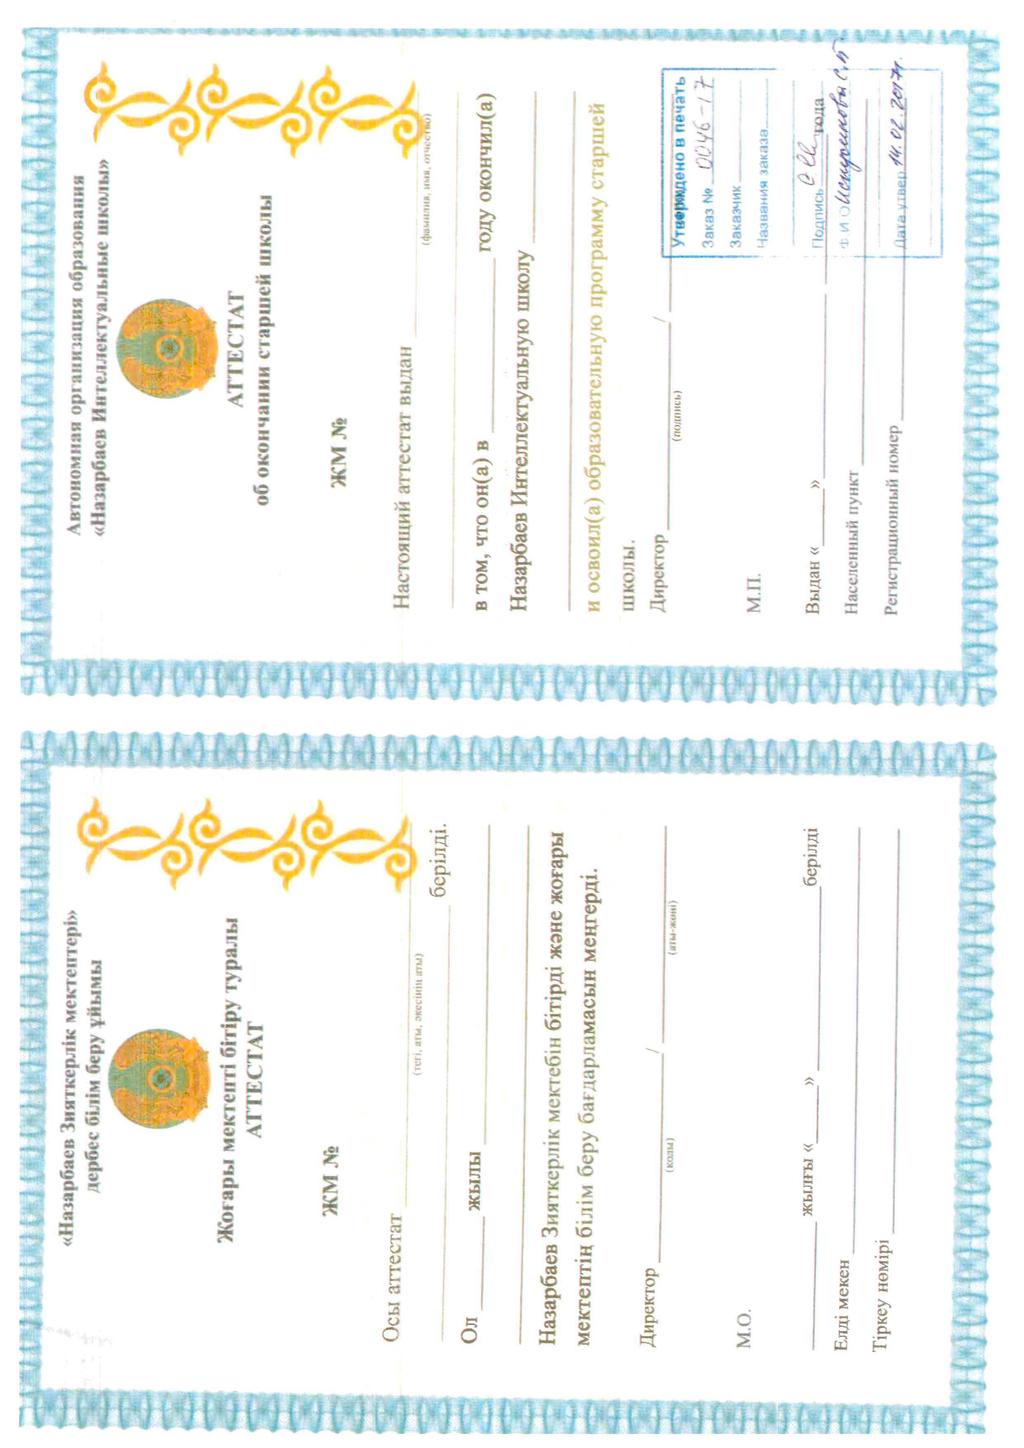 NIS Grade 12 Certificate (Аттестат/Getuigschrift)